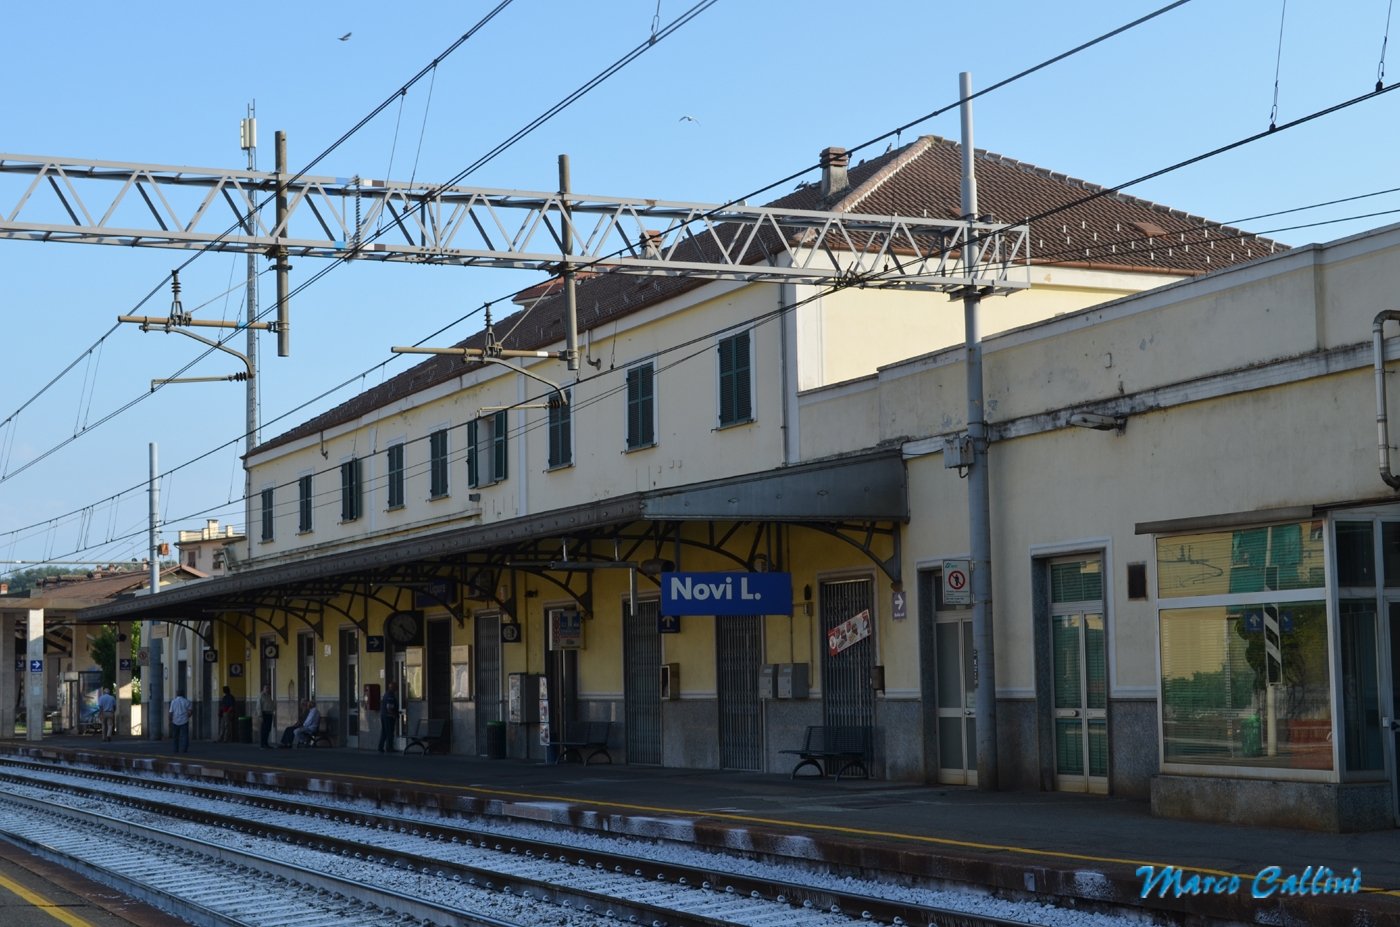 RFI rassicura i novesi: “La tratta Novi-Milano non sarà smantellata”